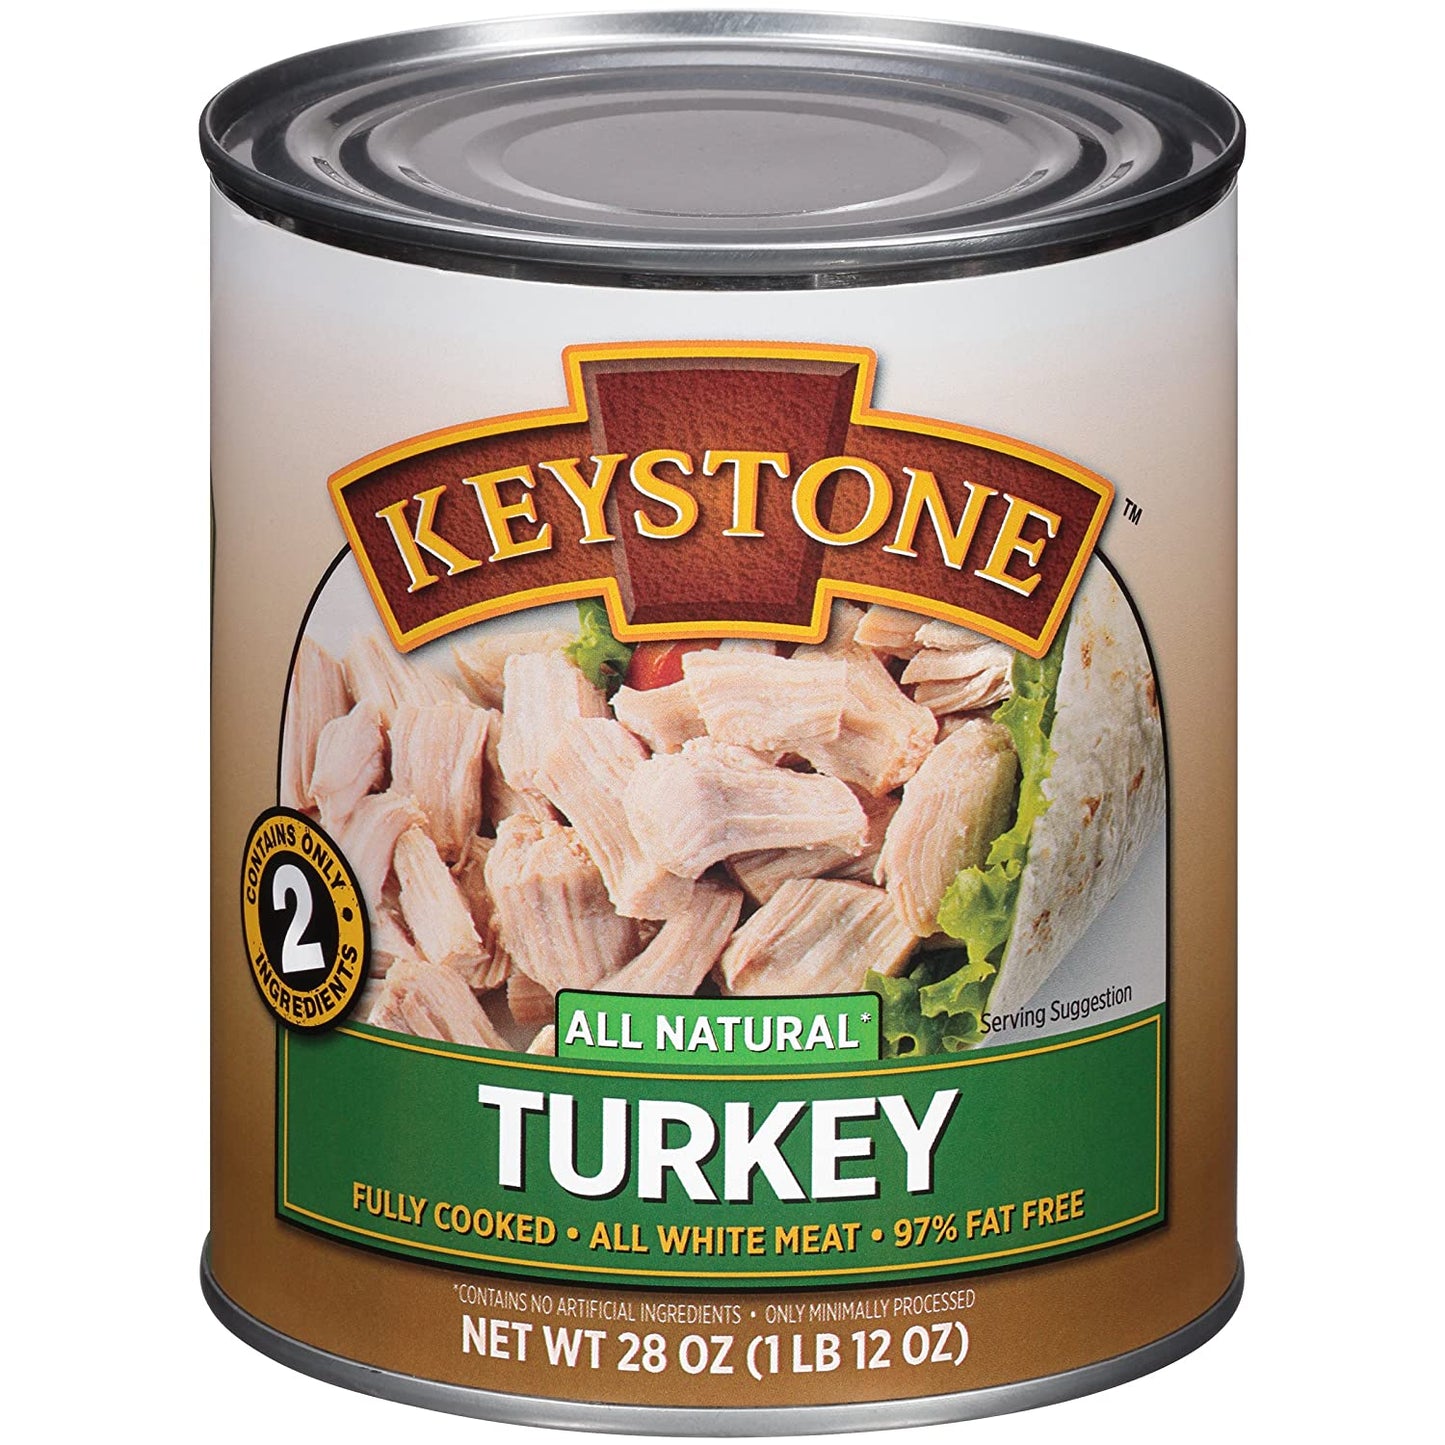 Keystone canned Turkey 28oz